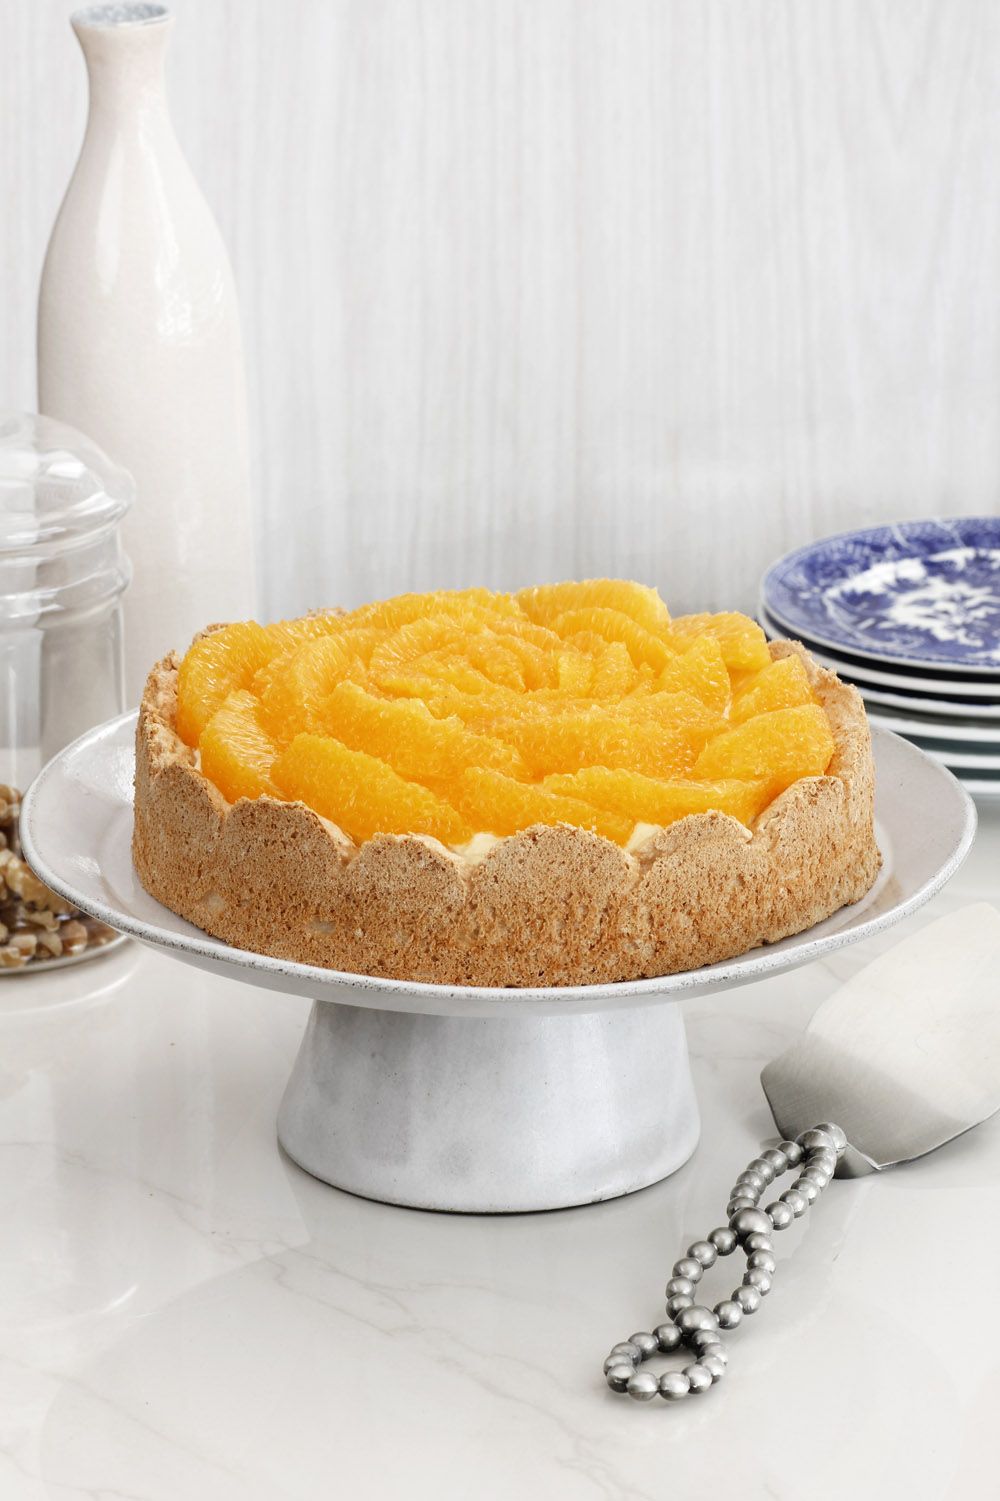 Flourless Orange Pie with Hazelnuts